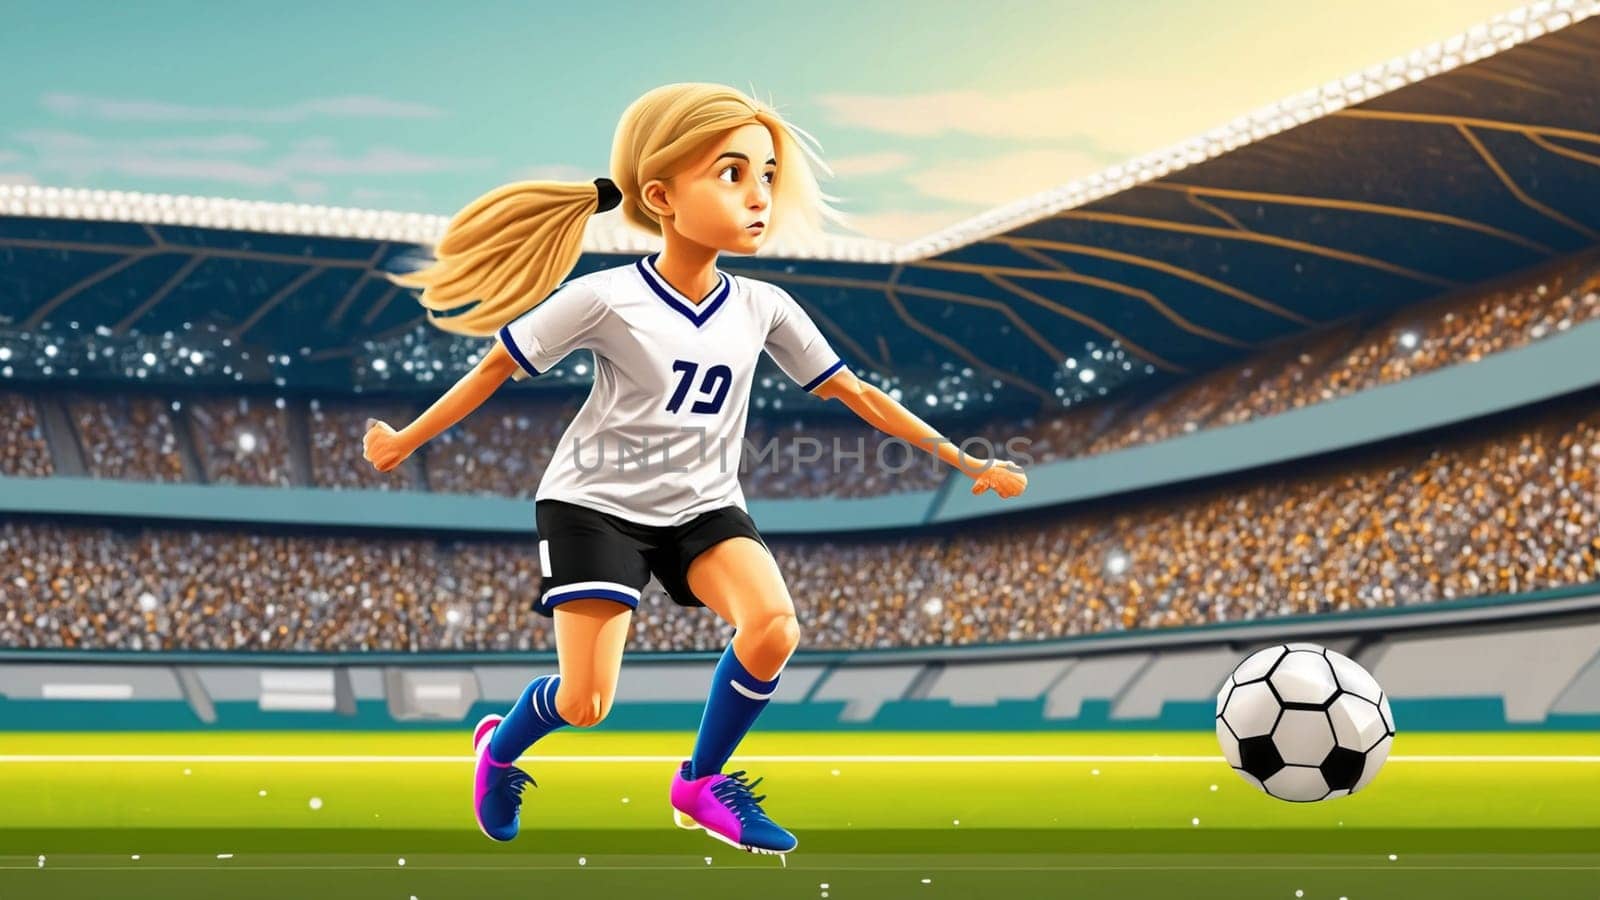 Eine junge Fussballspielerin in den Farben der deutschen Fussballnationalmannschaft spielt mit ihren Füssen einen Fussball. illustrationen im Cartoon Stil auf Sport stadions hintergrund für Kinder High quality illustration